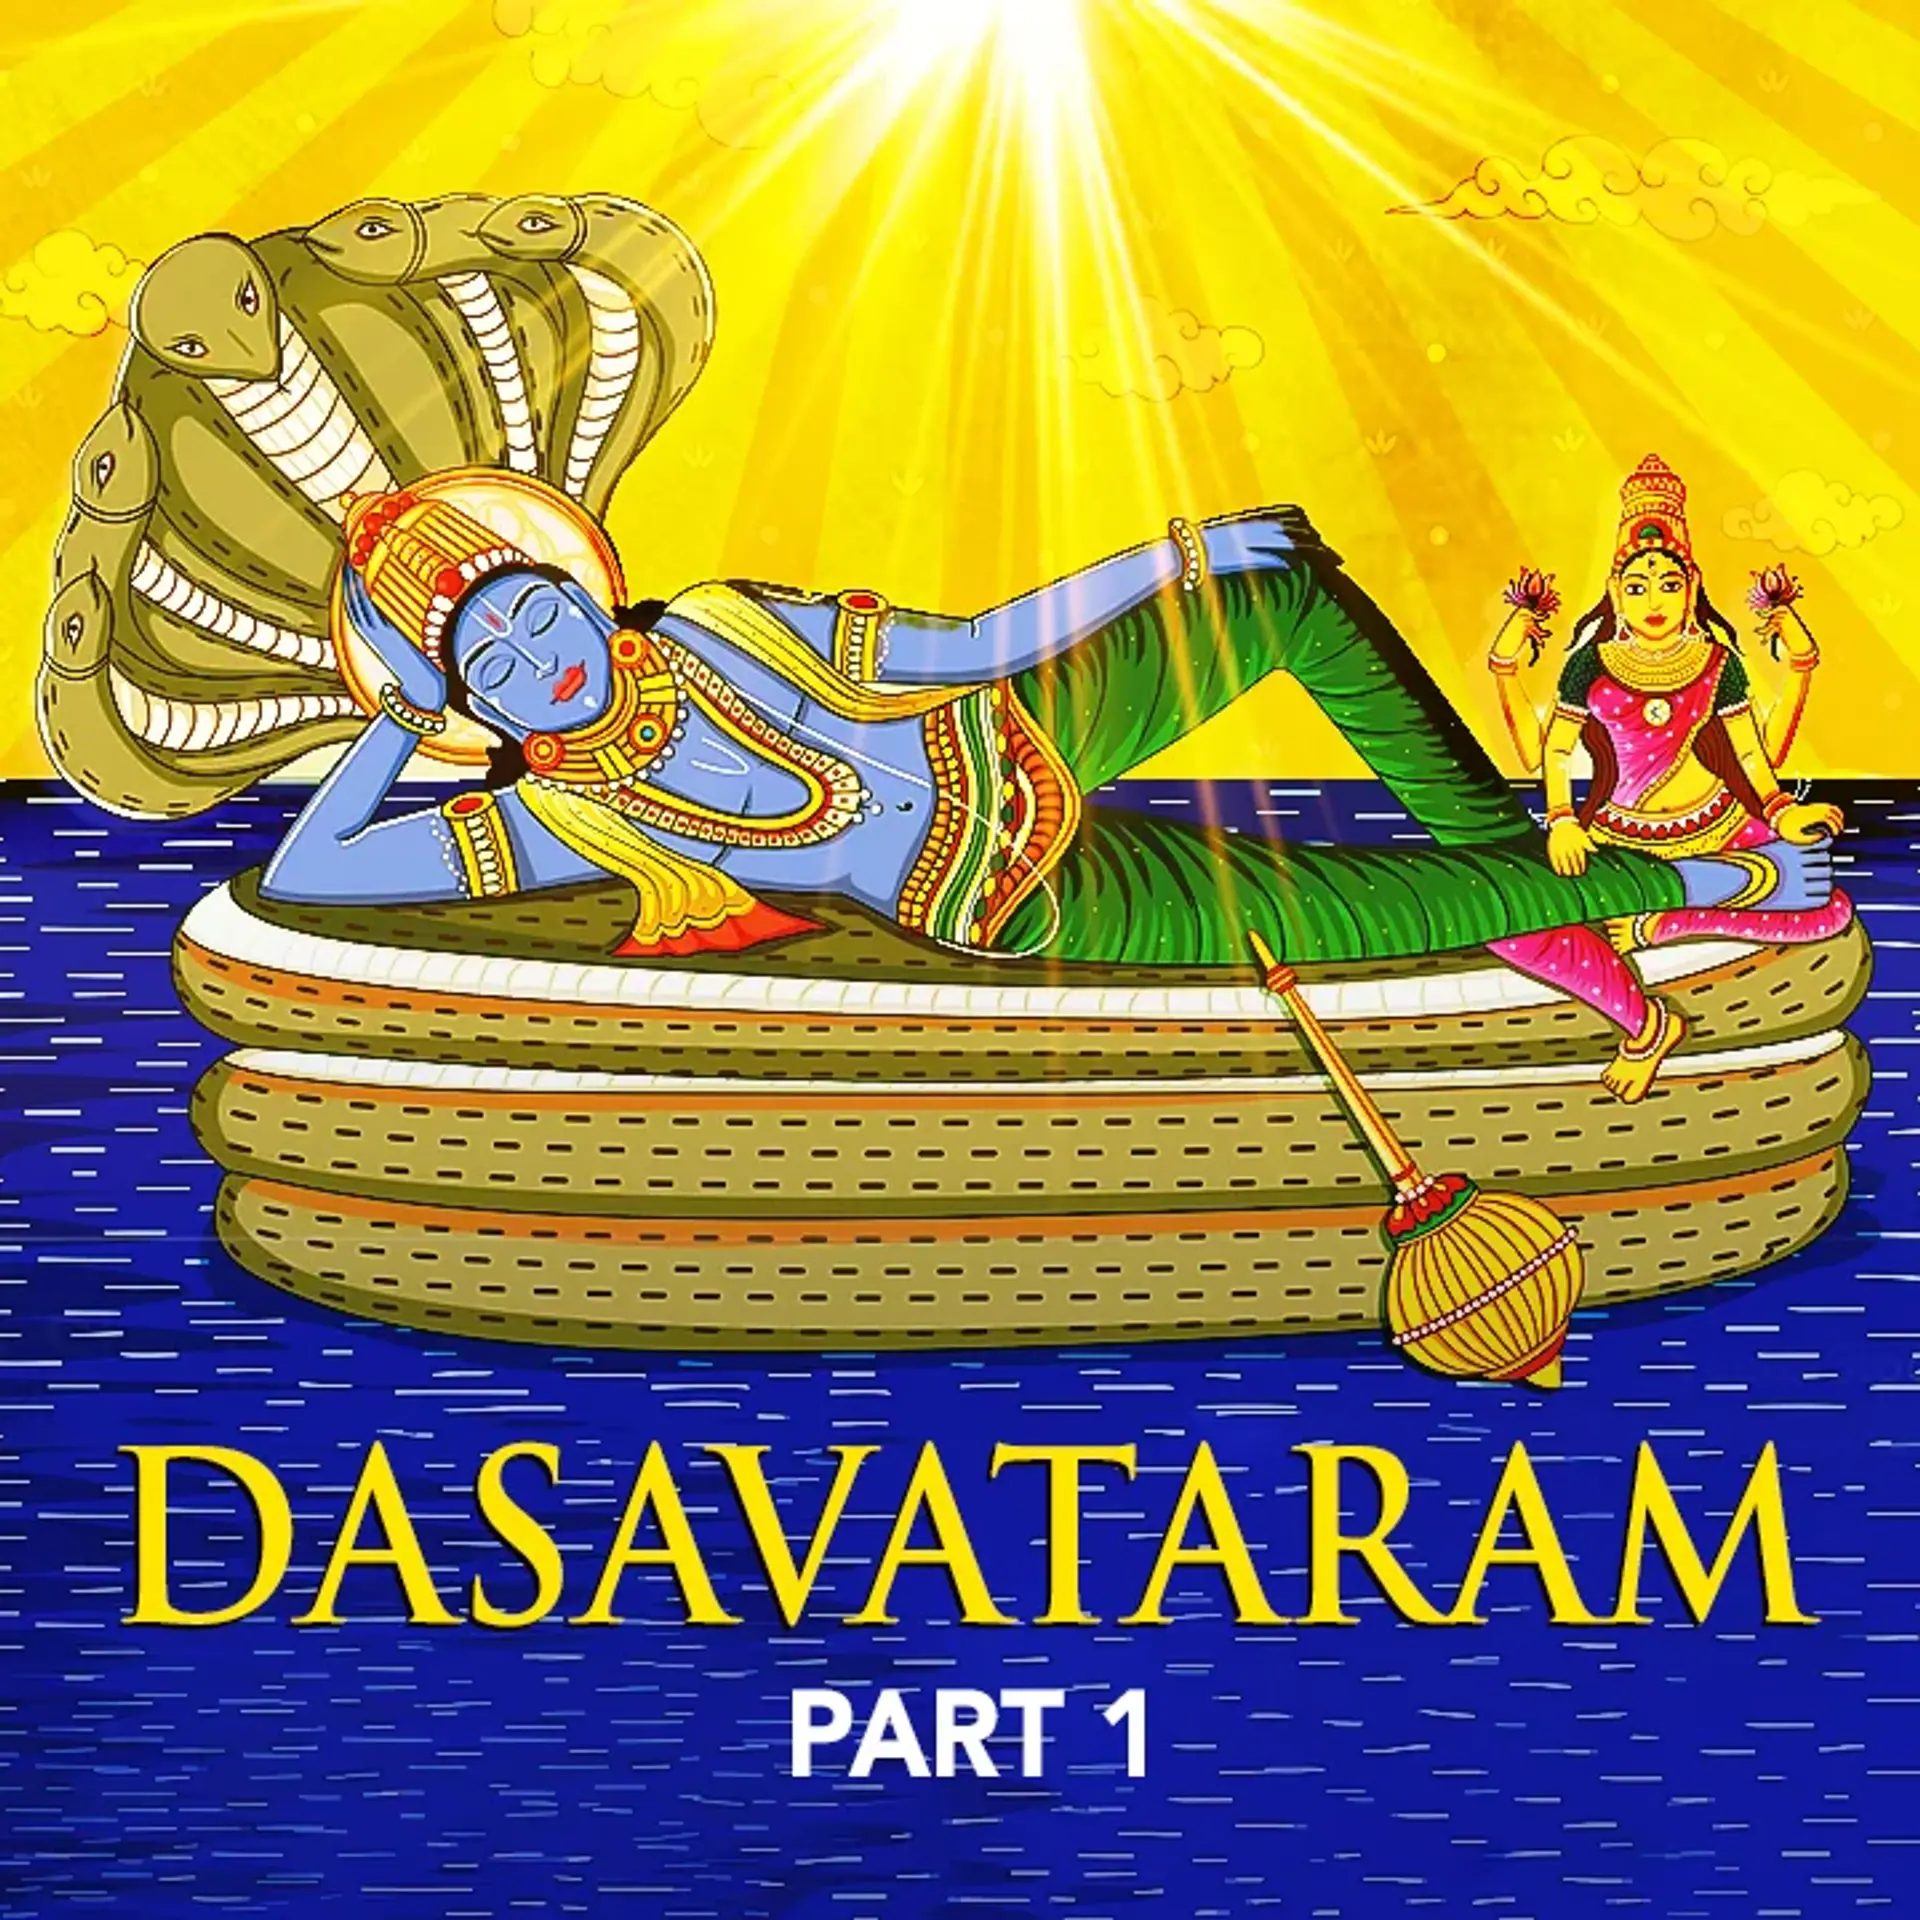 1.Dhasavataram